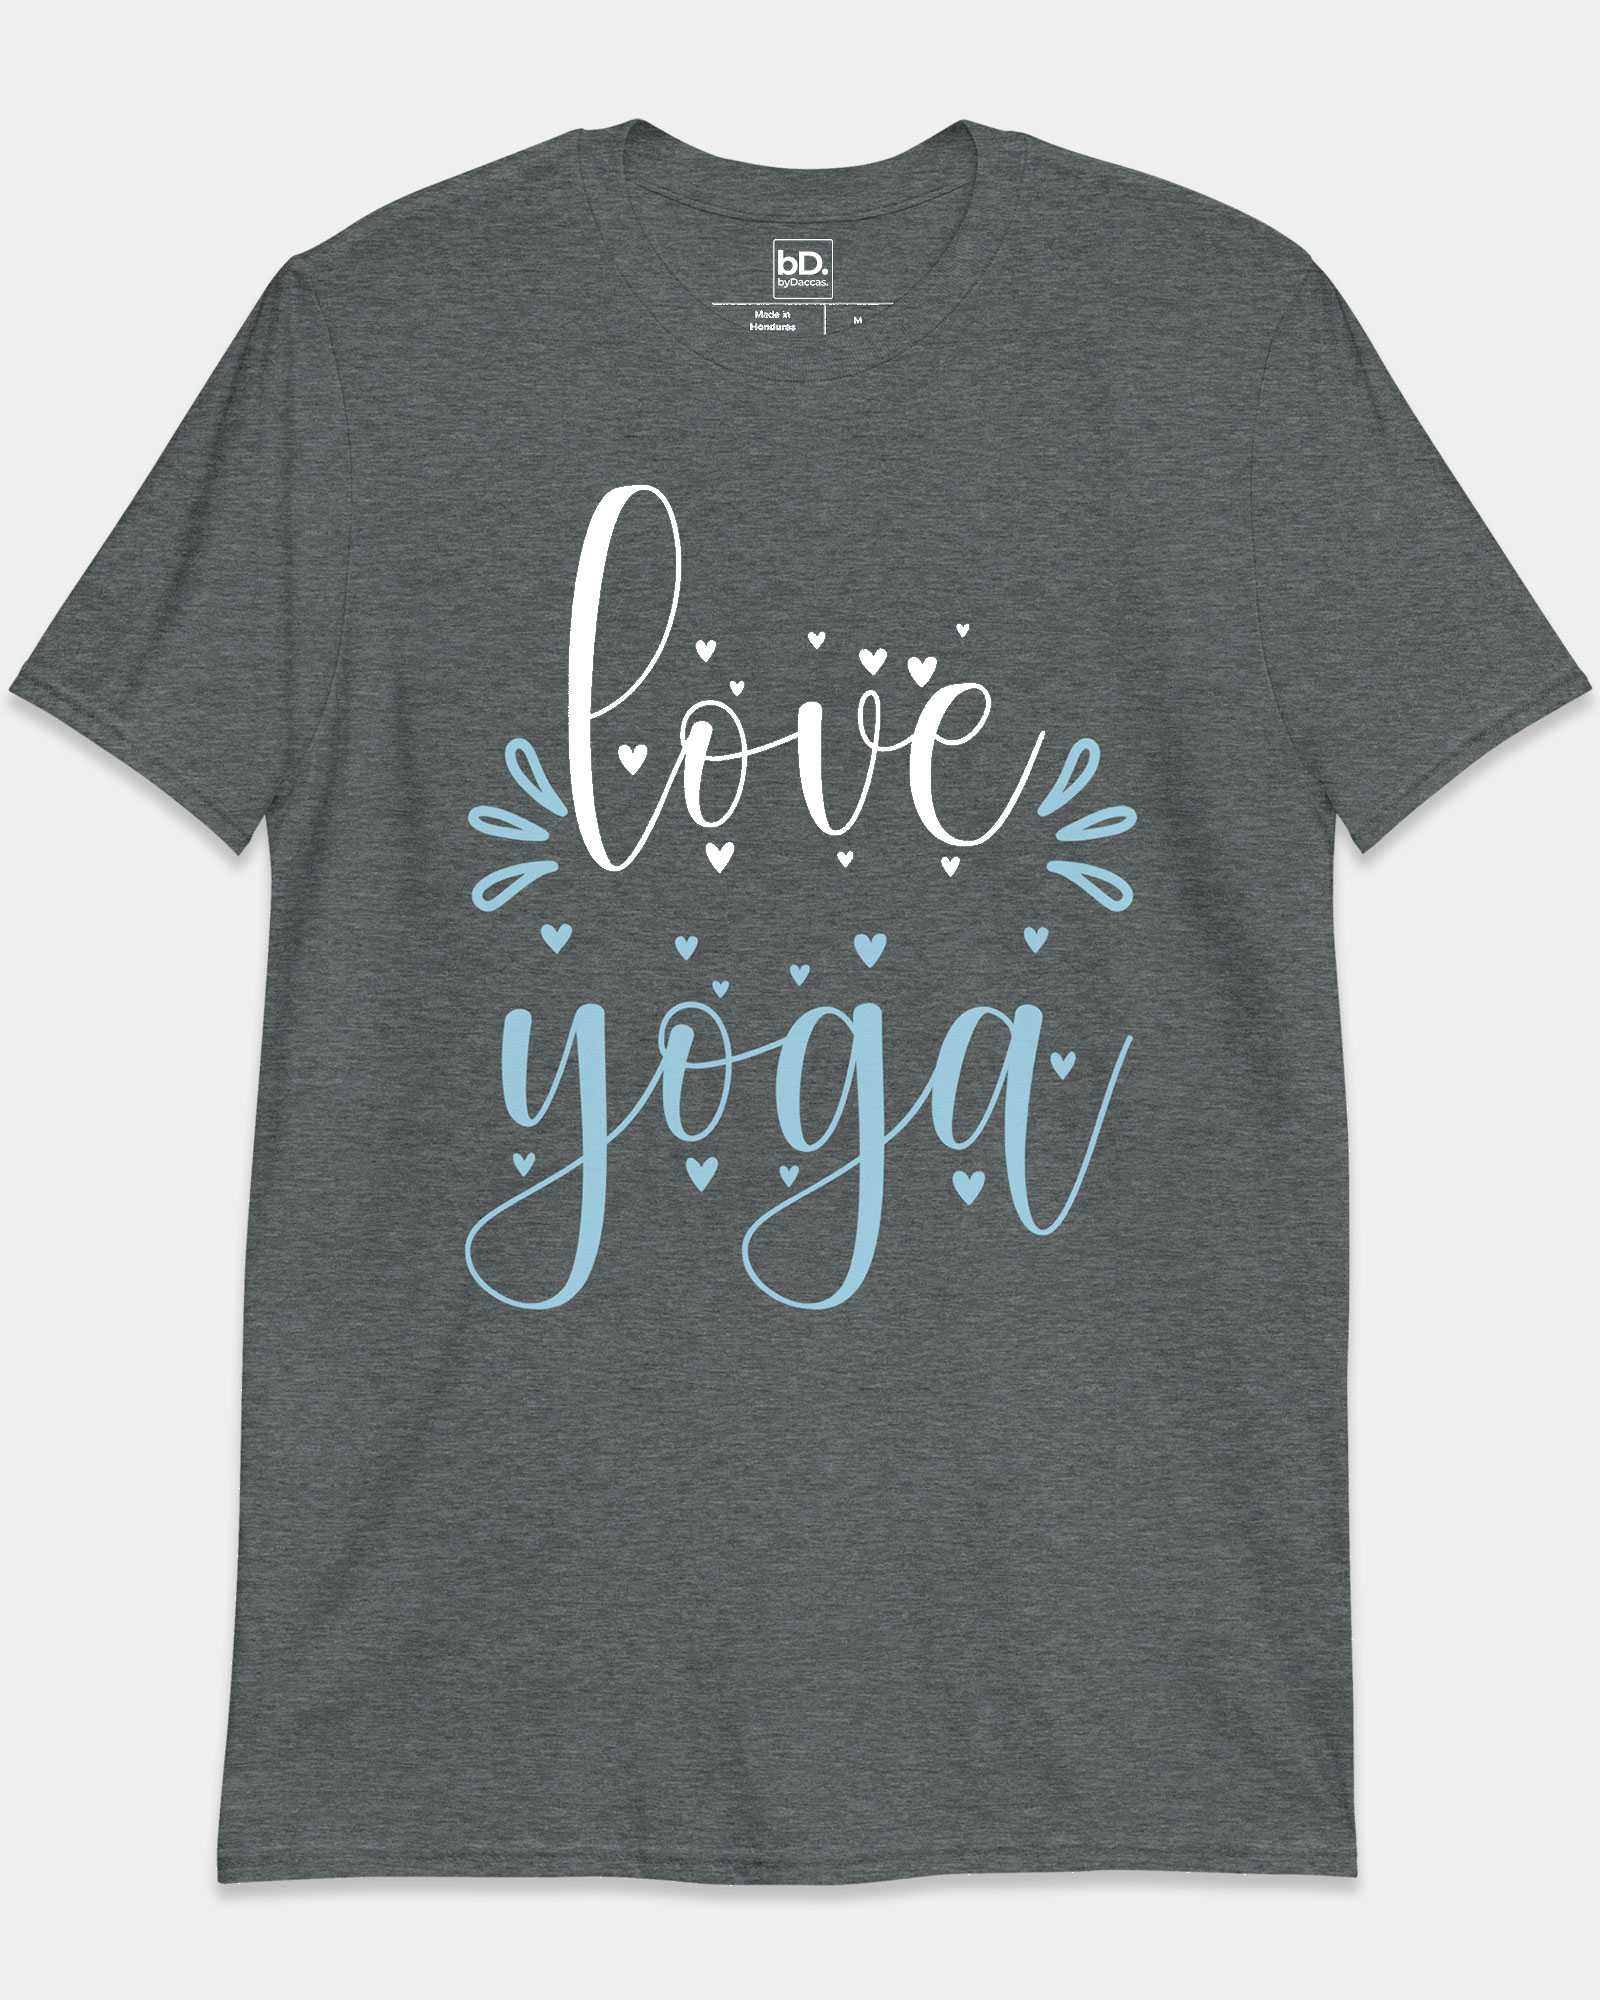 Love yoga tshirt for men